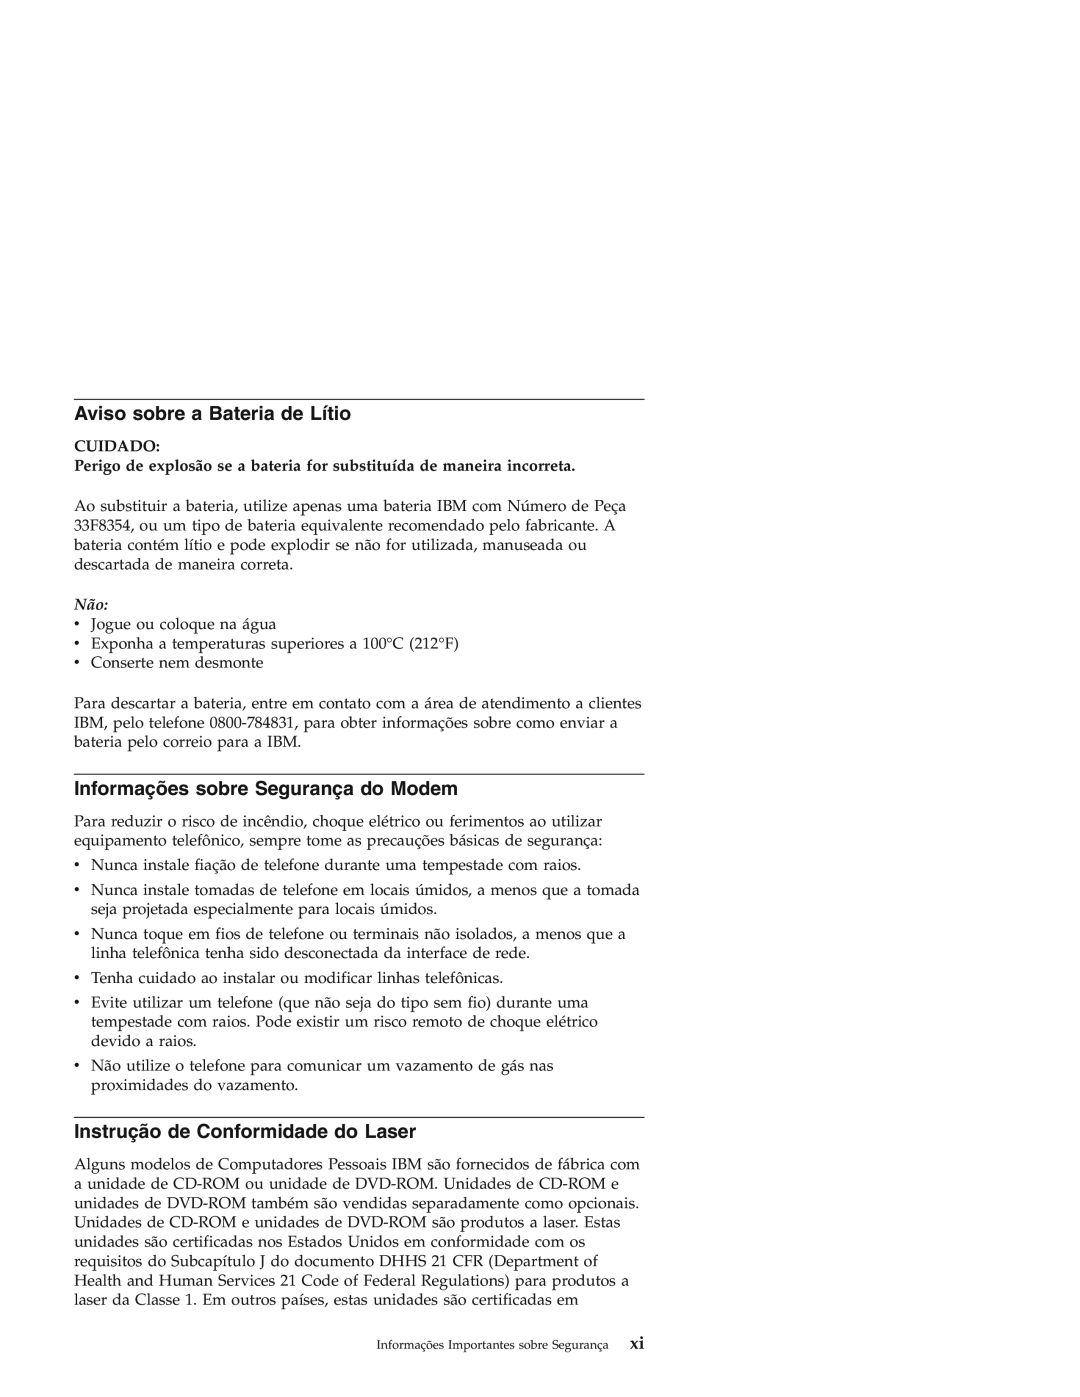 IBM Personal Computer manual Aviso sobre a Bateria de Lítio, Informações sobre Segurança do Modem, Cuidado 